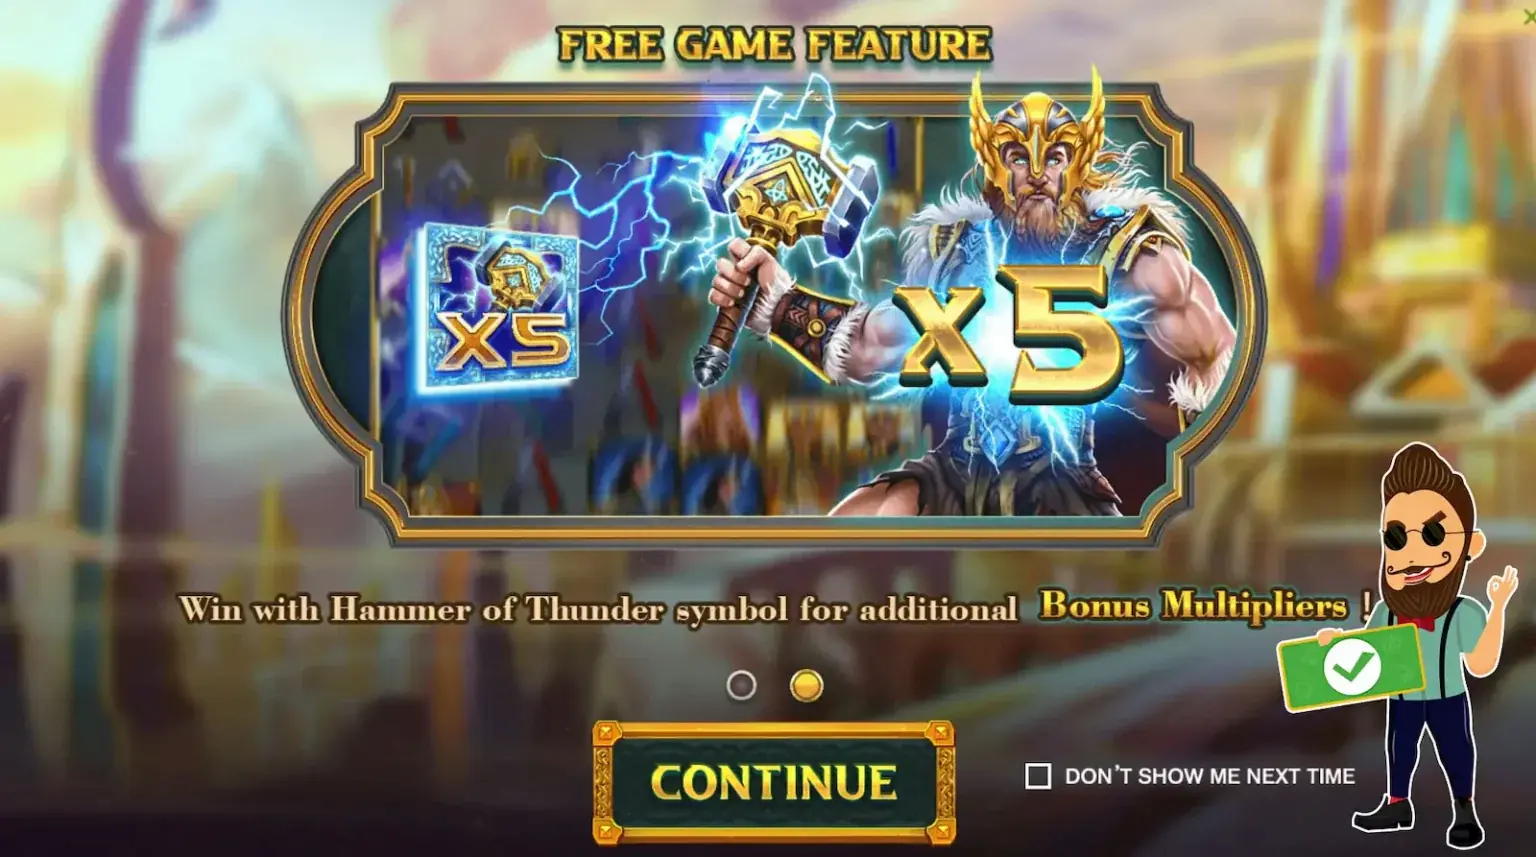 Característica de juegos gratis de Hammer of Thunder